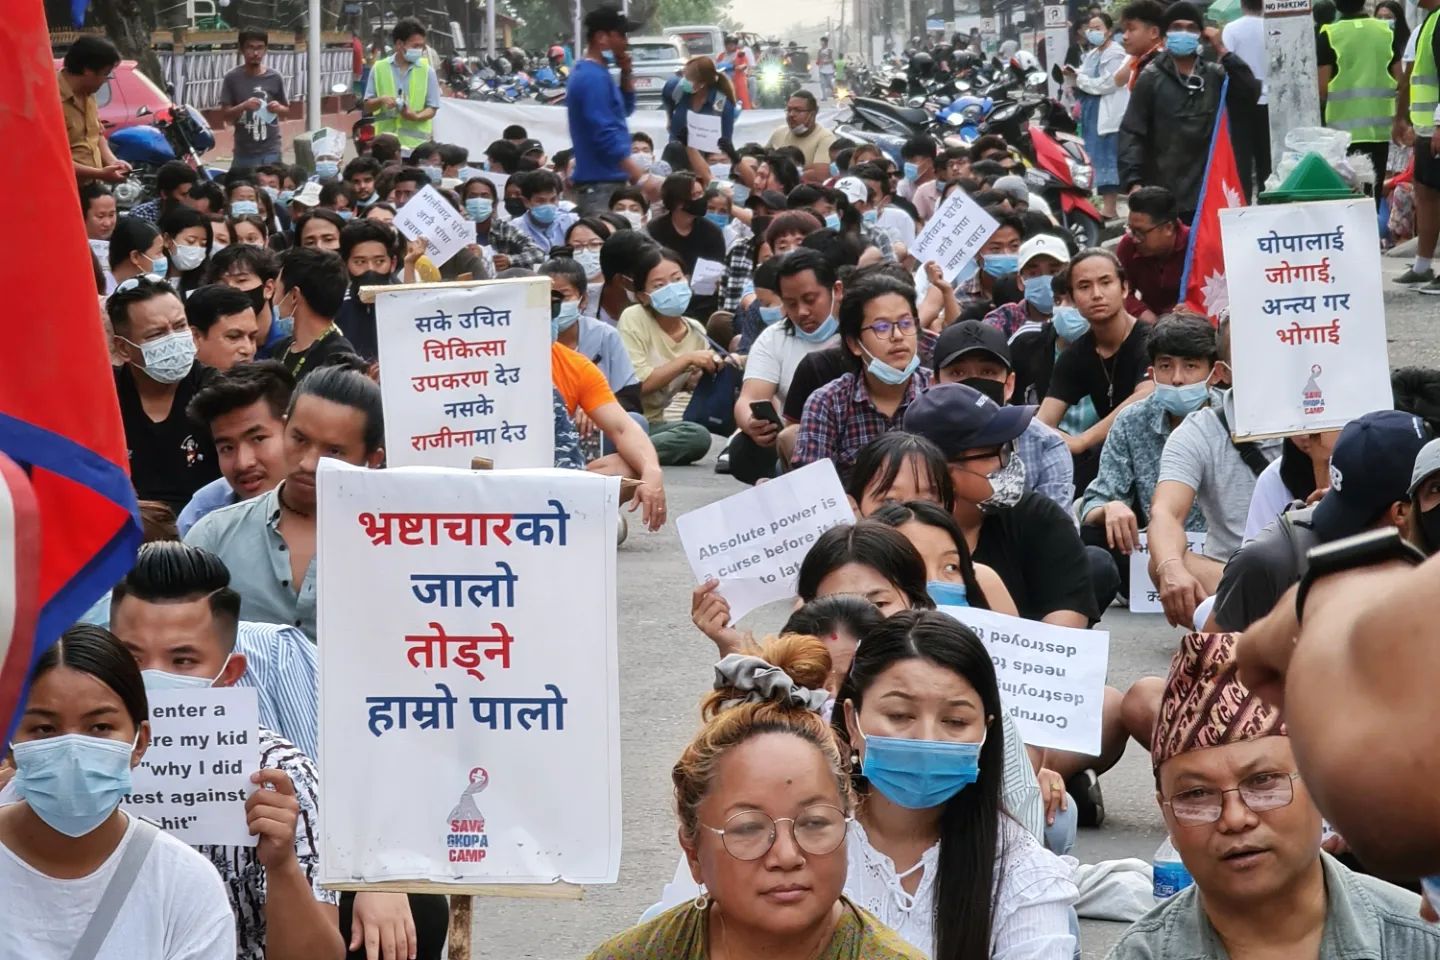 घोपा बचाउन काठमाडौंबाट धरान पुगे युवाहरू, अनि जुर्मुराए धरानवासी